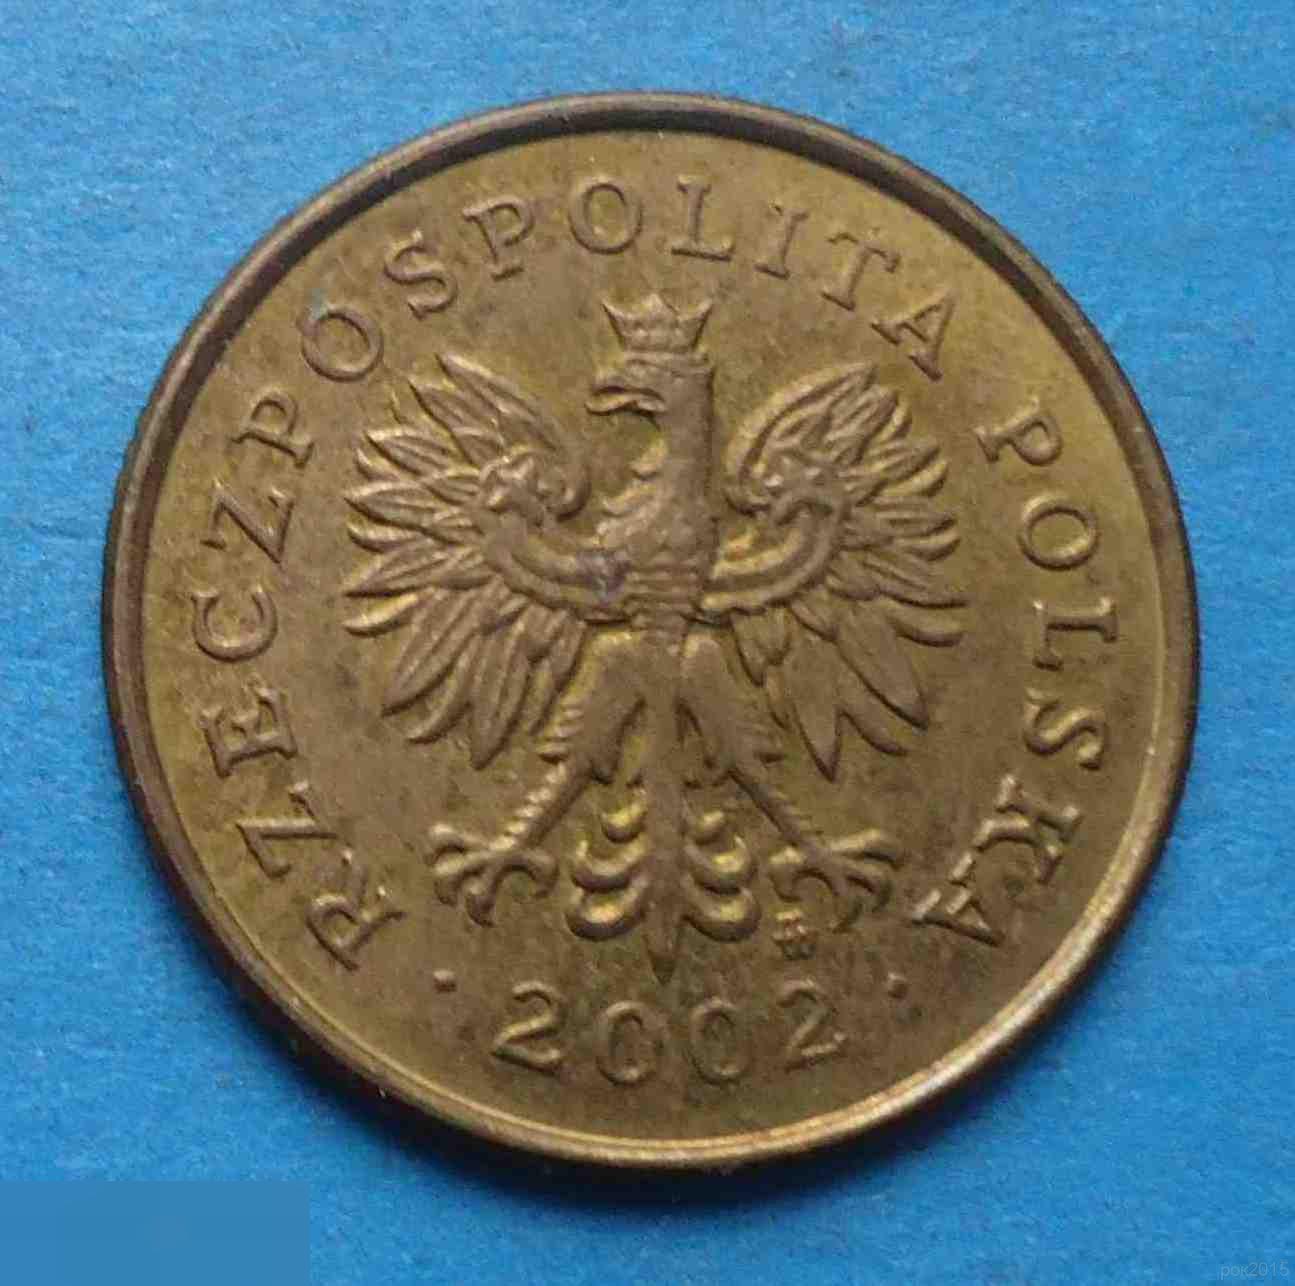 5 грош Польша 2002 год 1